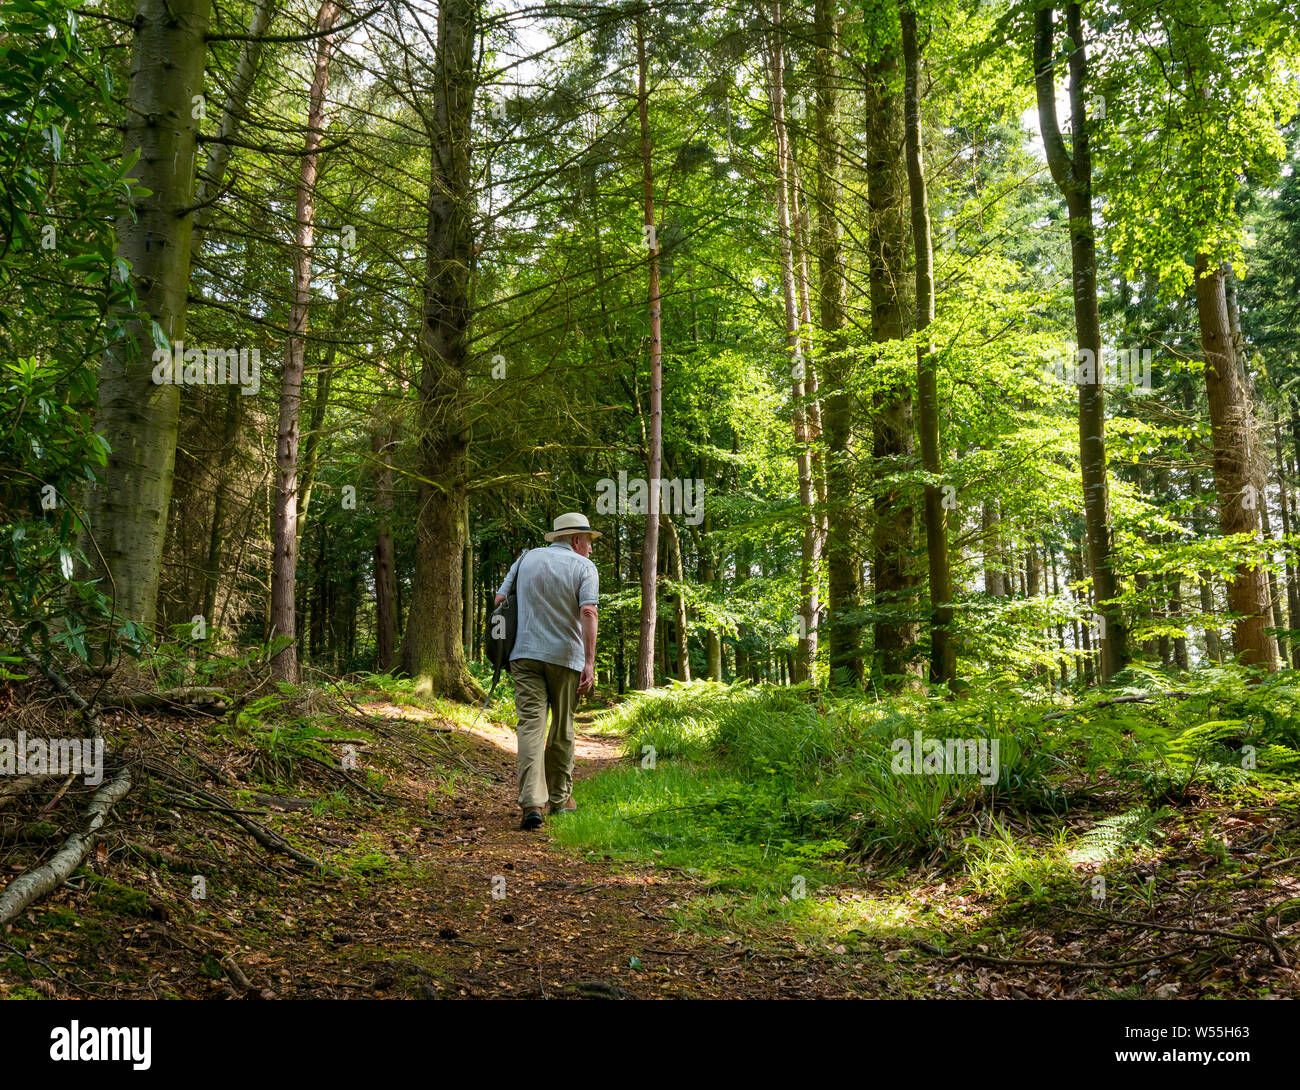 Humbie legno, East Lothian, Scozia, Regno Unito, 26 luglio 2019. Regno Unito Meteo: un uomo anziano che indossa un cappello di Panama passeggiate all'ombra di un fitto bosco di un paese a piedi in estate Foto Stock